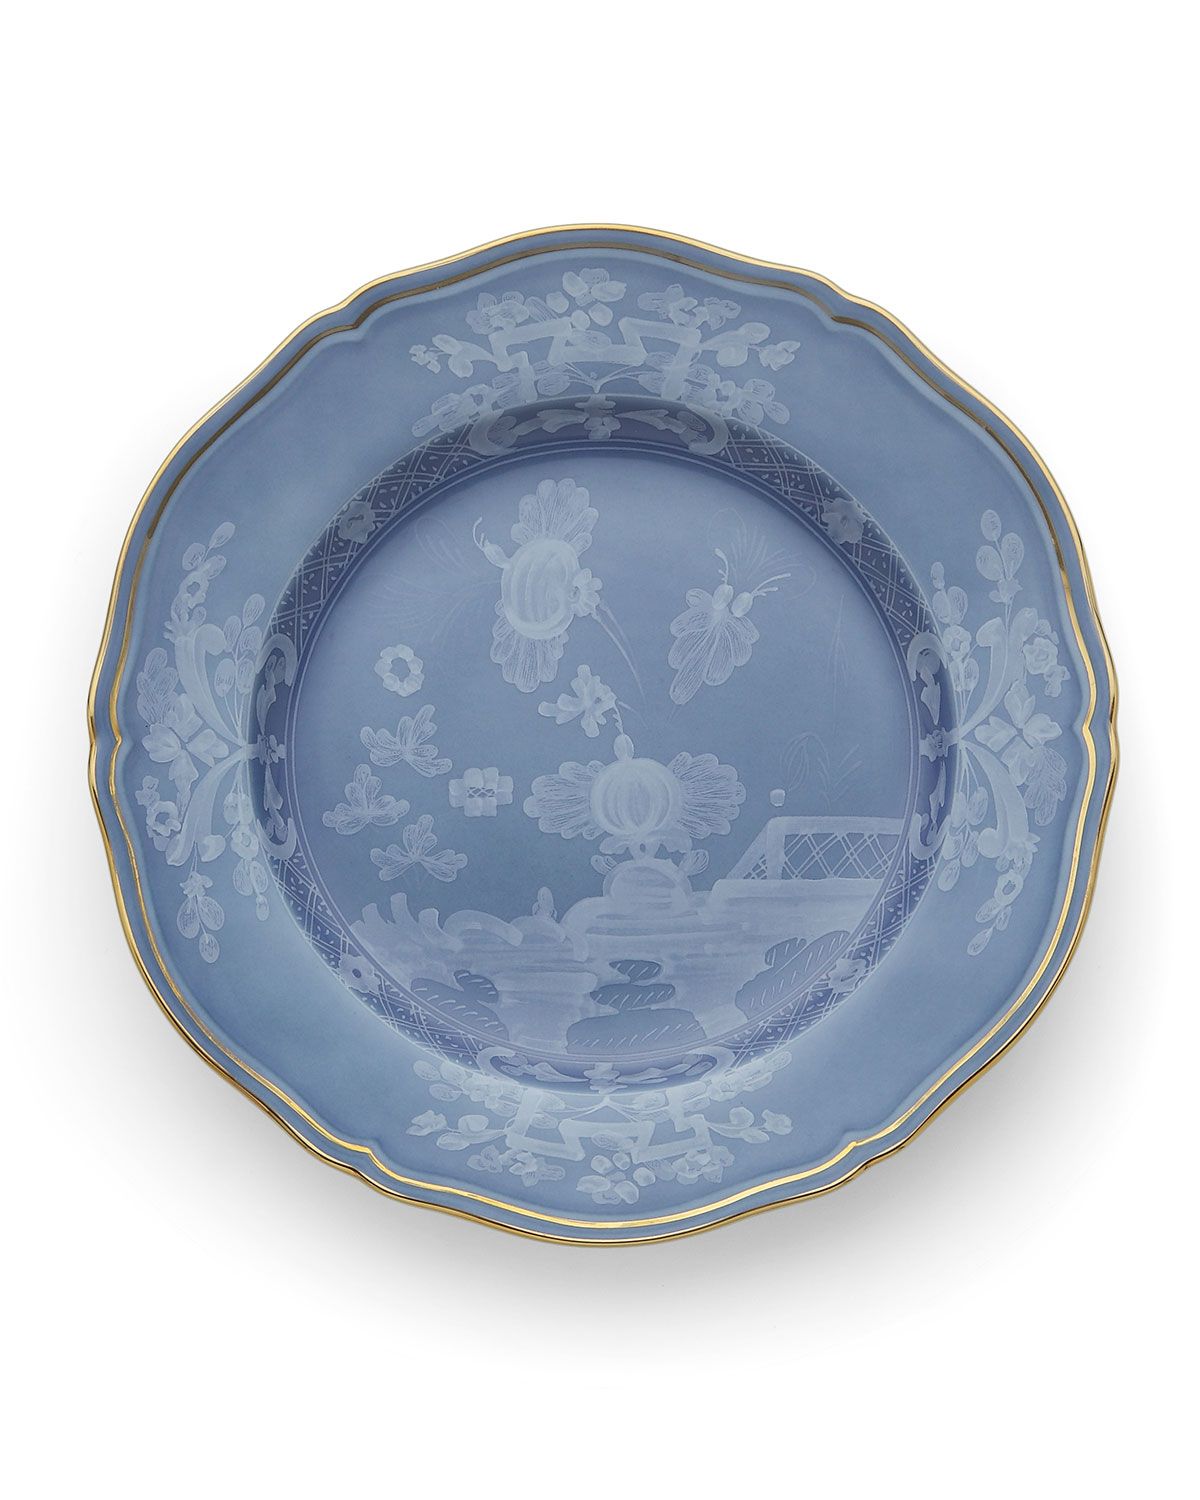 Oriente Italiano Dinner Plate, Pervinca | Neiman Marcus